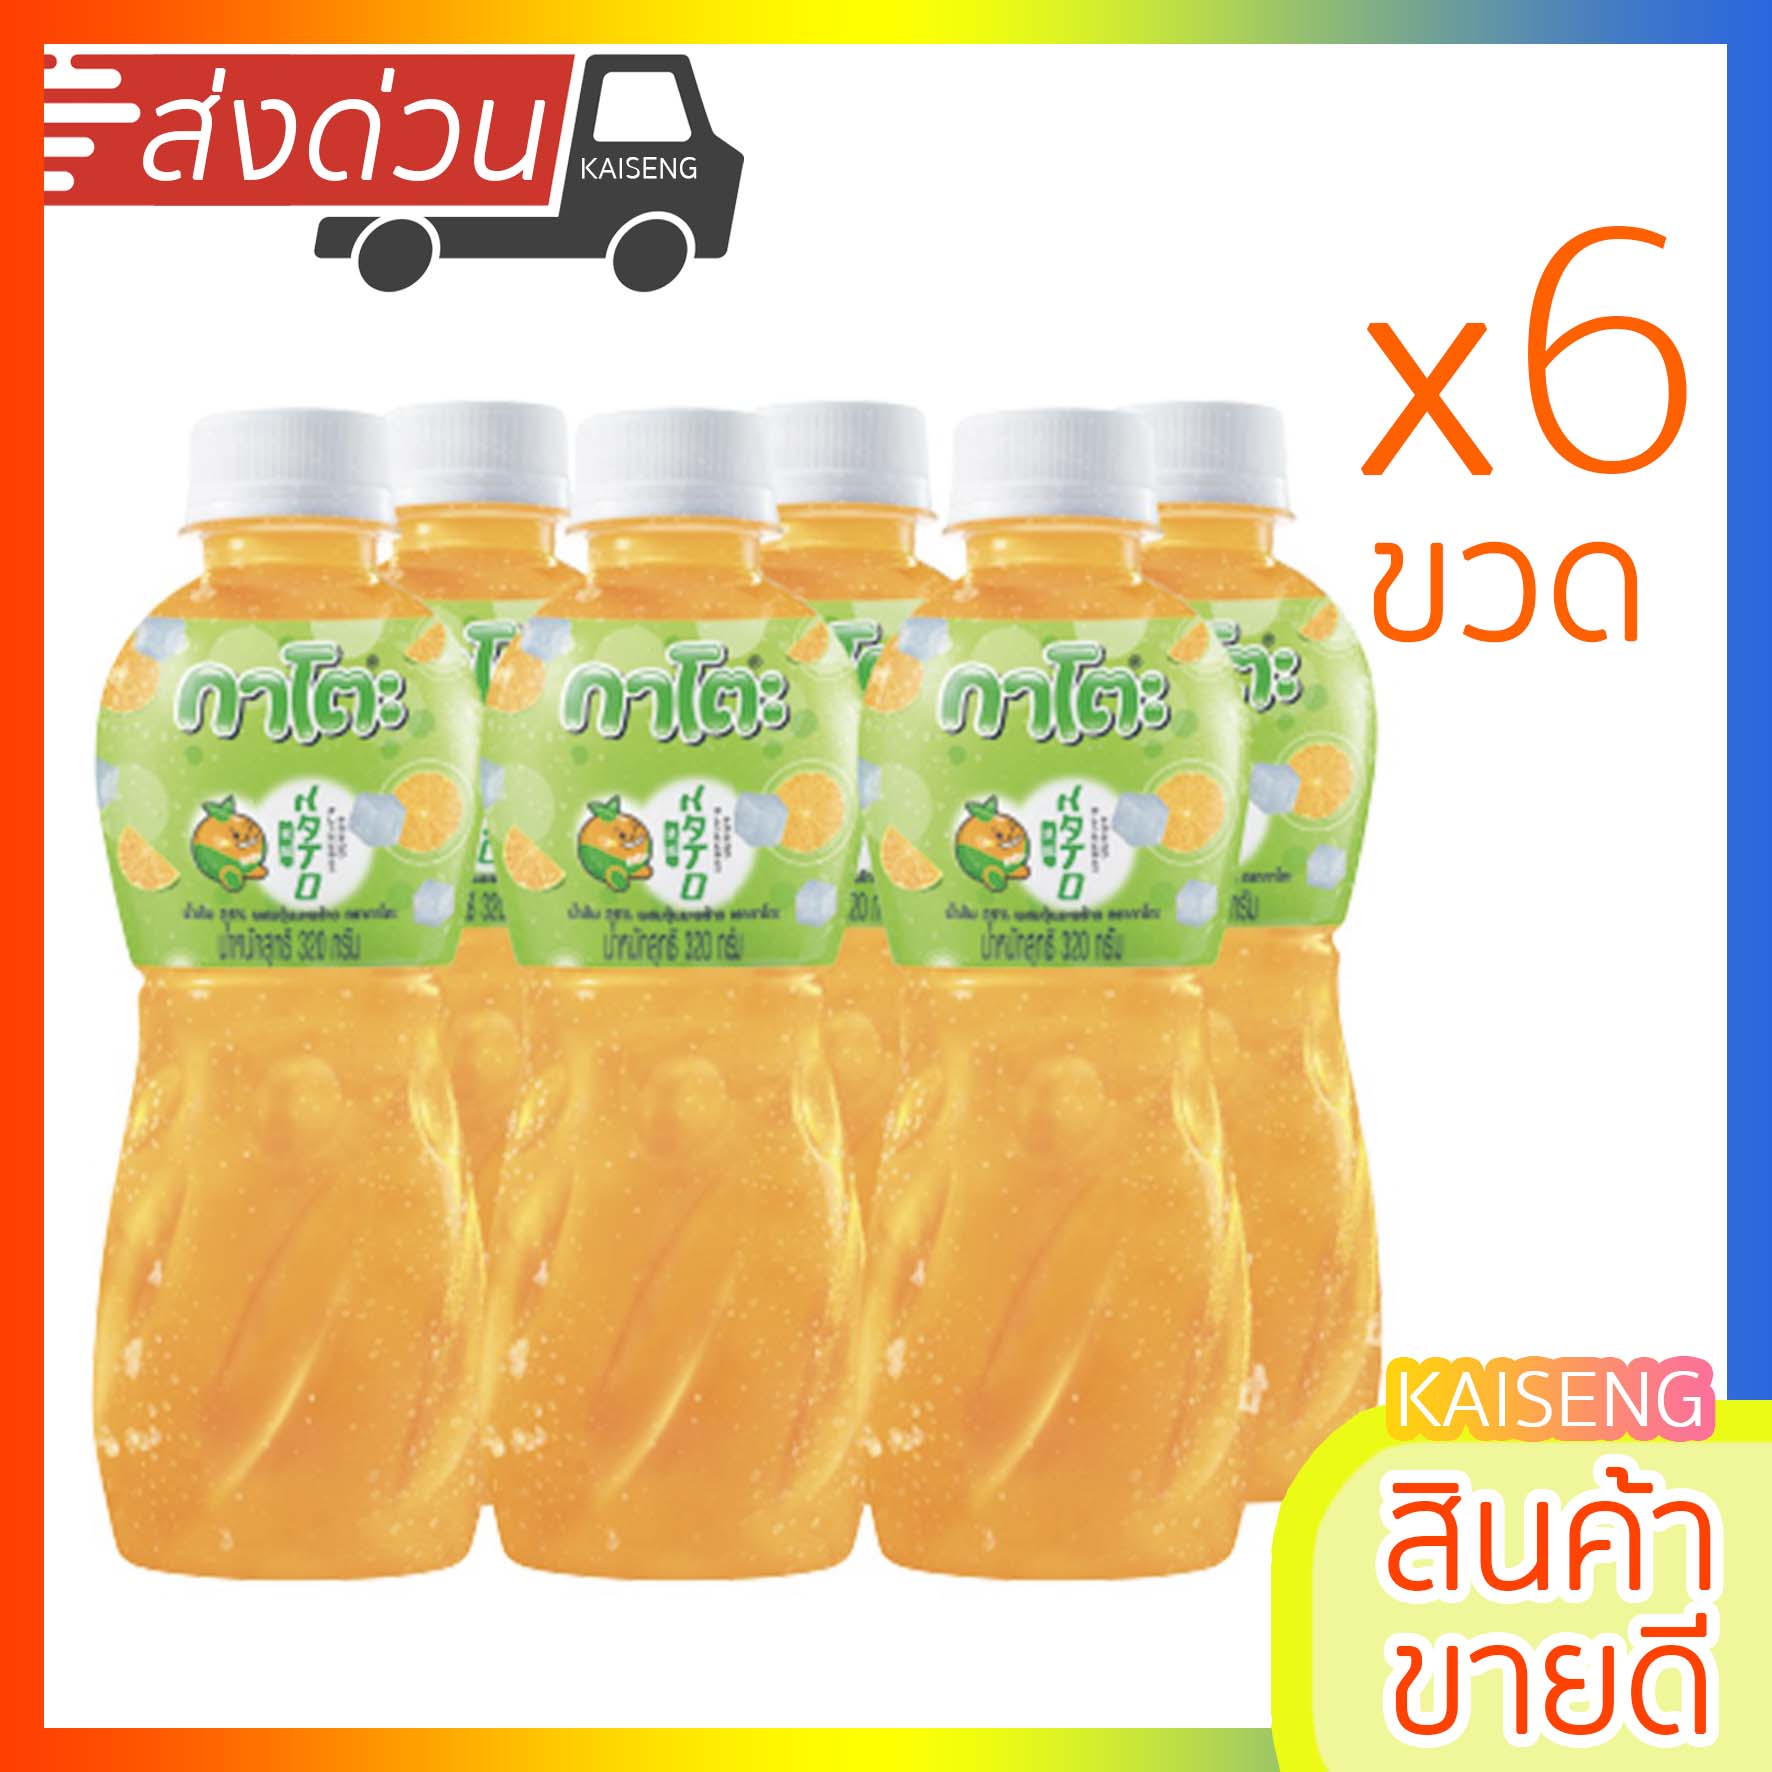 กาโตะ น้ำส้ม 320g แพ็ค 6 ขวด สินค้าใหม่ พร้อมจัดส่ง น้ำผลไม้ ส้ม ผลิตจากน้ำผลไม้แท้